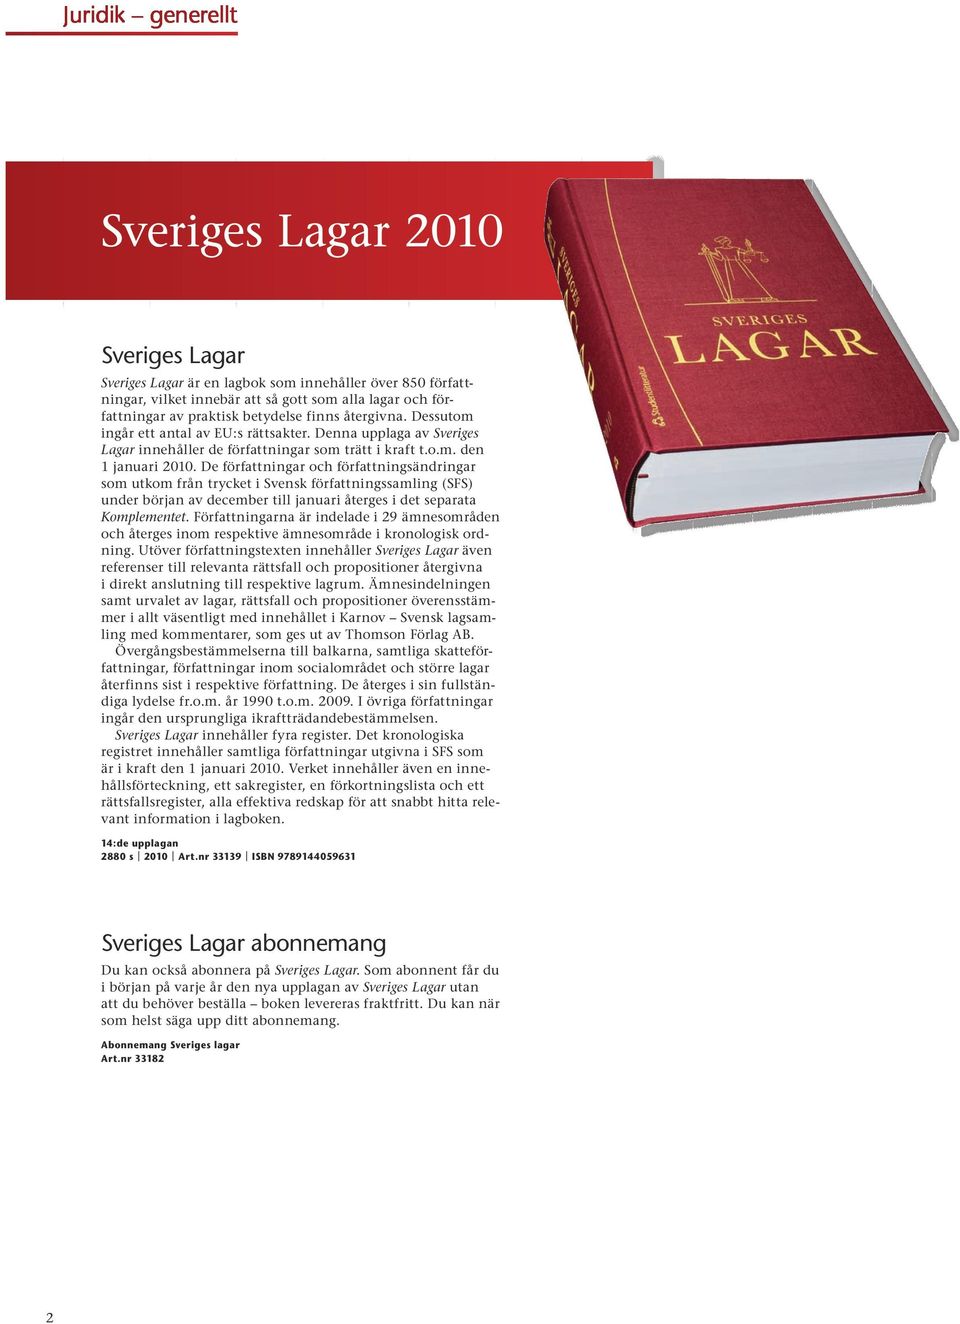 De författningar och författningsändringar som utkom från trycket i Svensk författningssamling (SFS) under början av december till januari återges i det separata Komplementet.